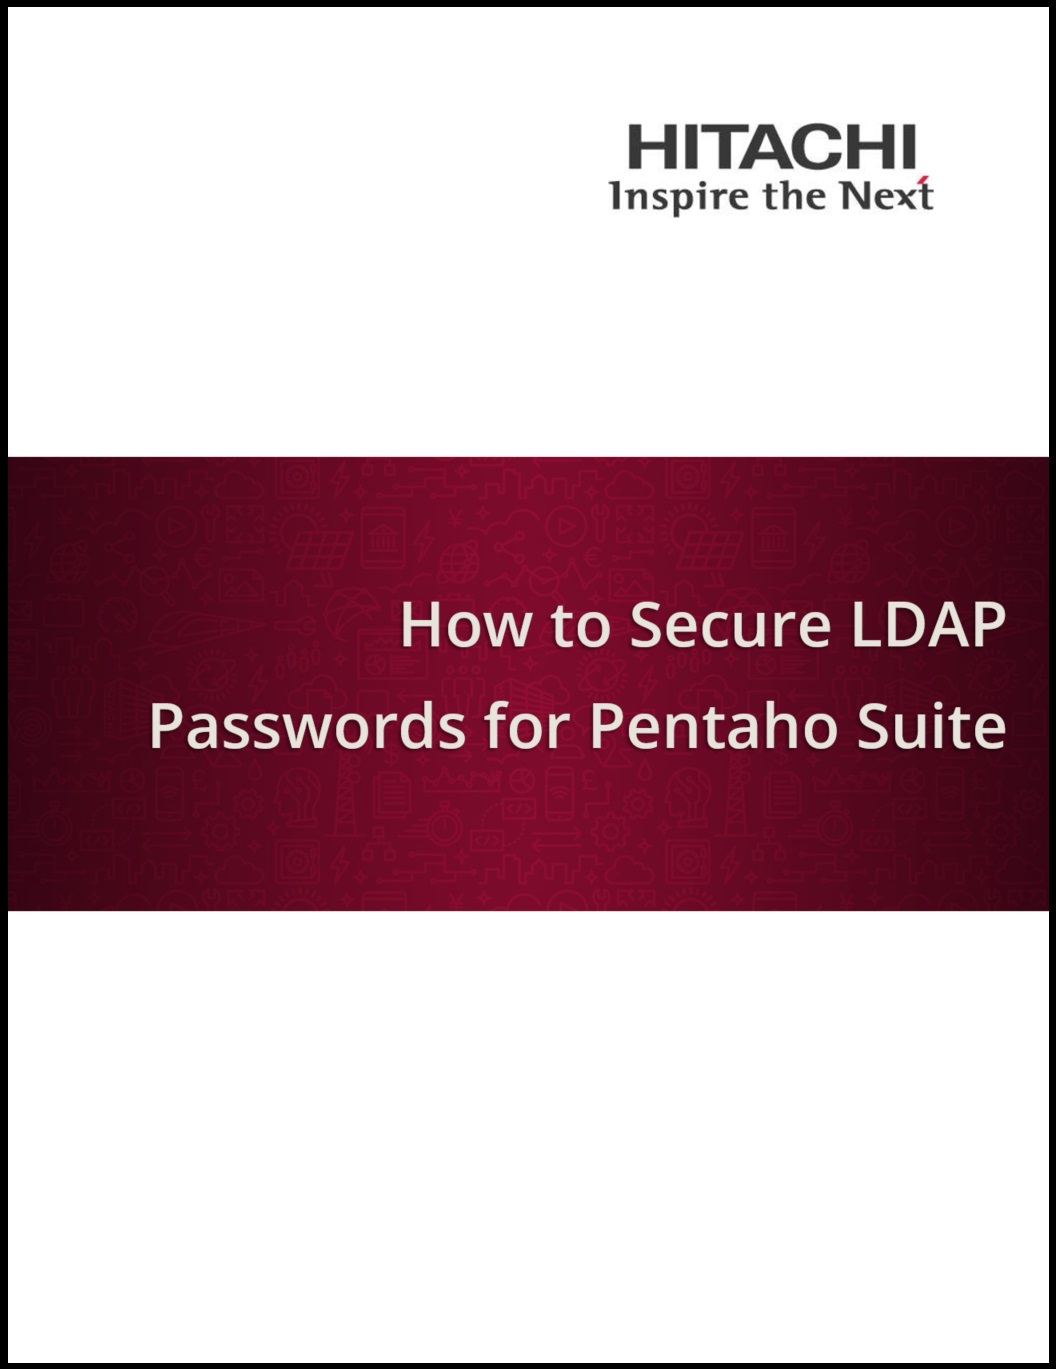 How_to_Secure_LDAP.jpg